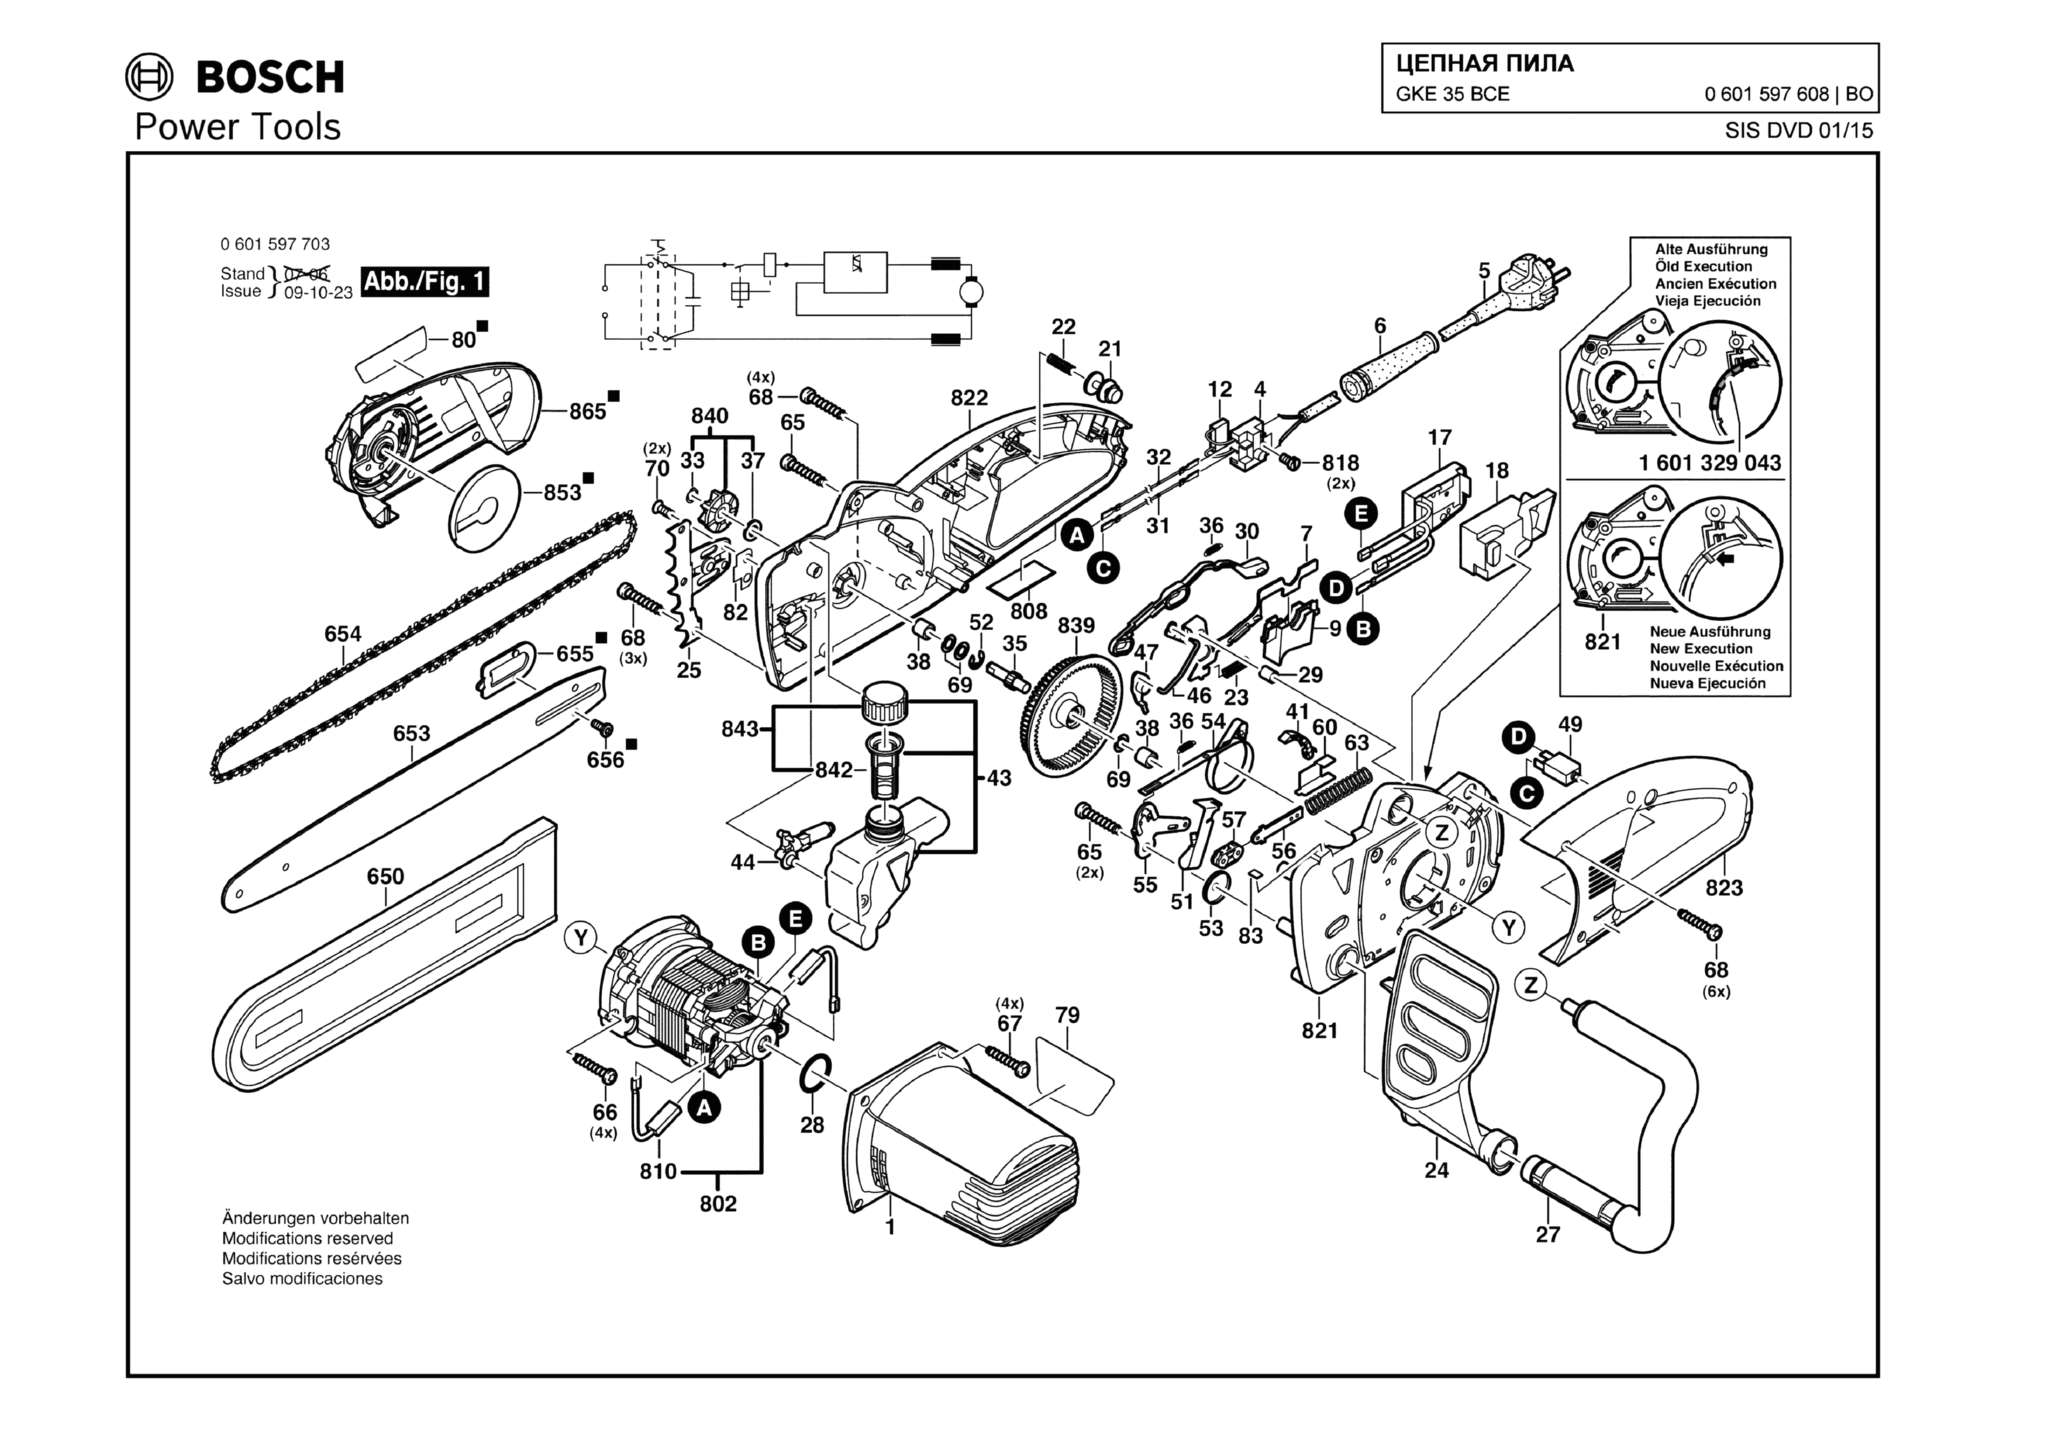 Запчасти, схема и деталировка Bosch GKE 35 BCE (ТИП 0601597608)